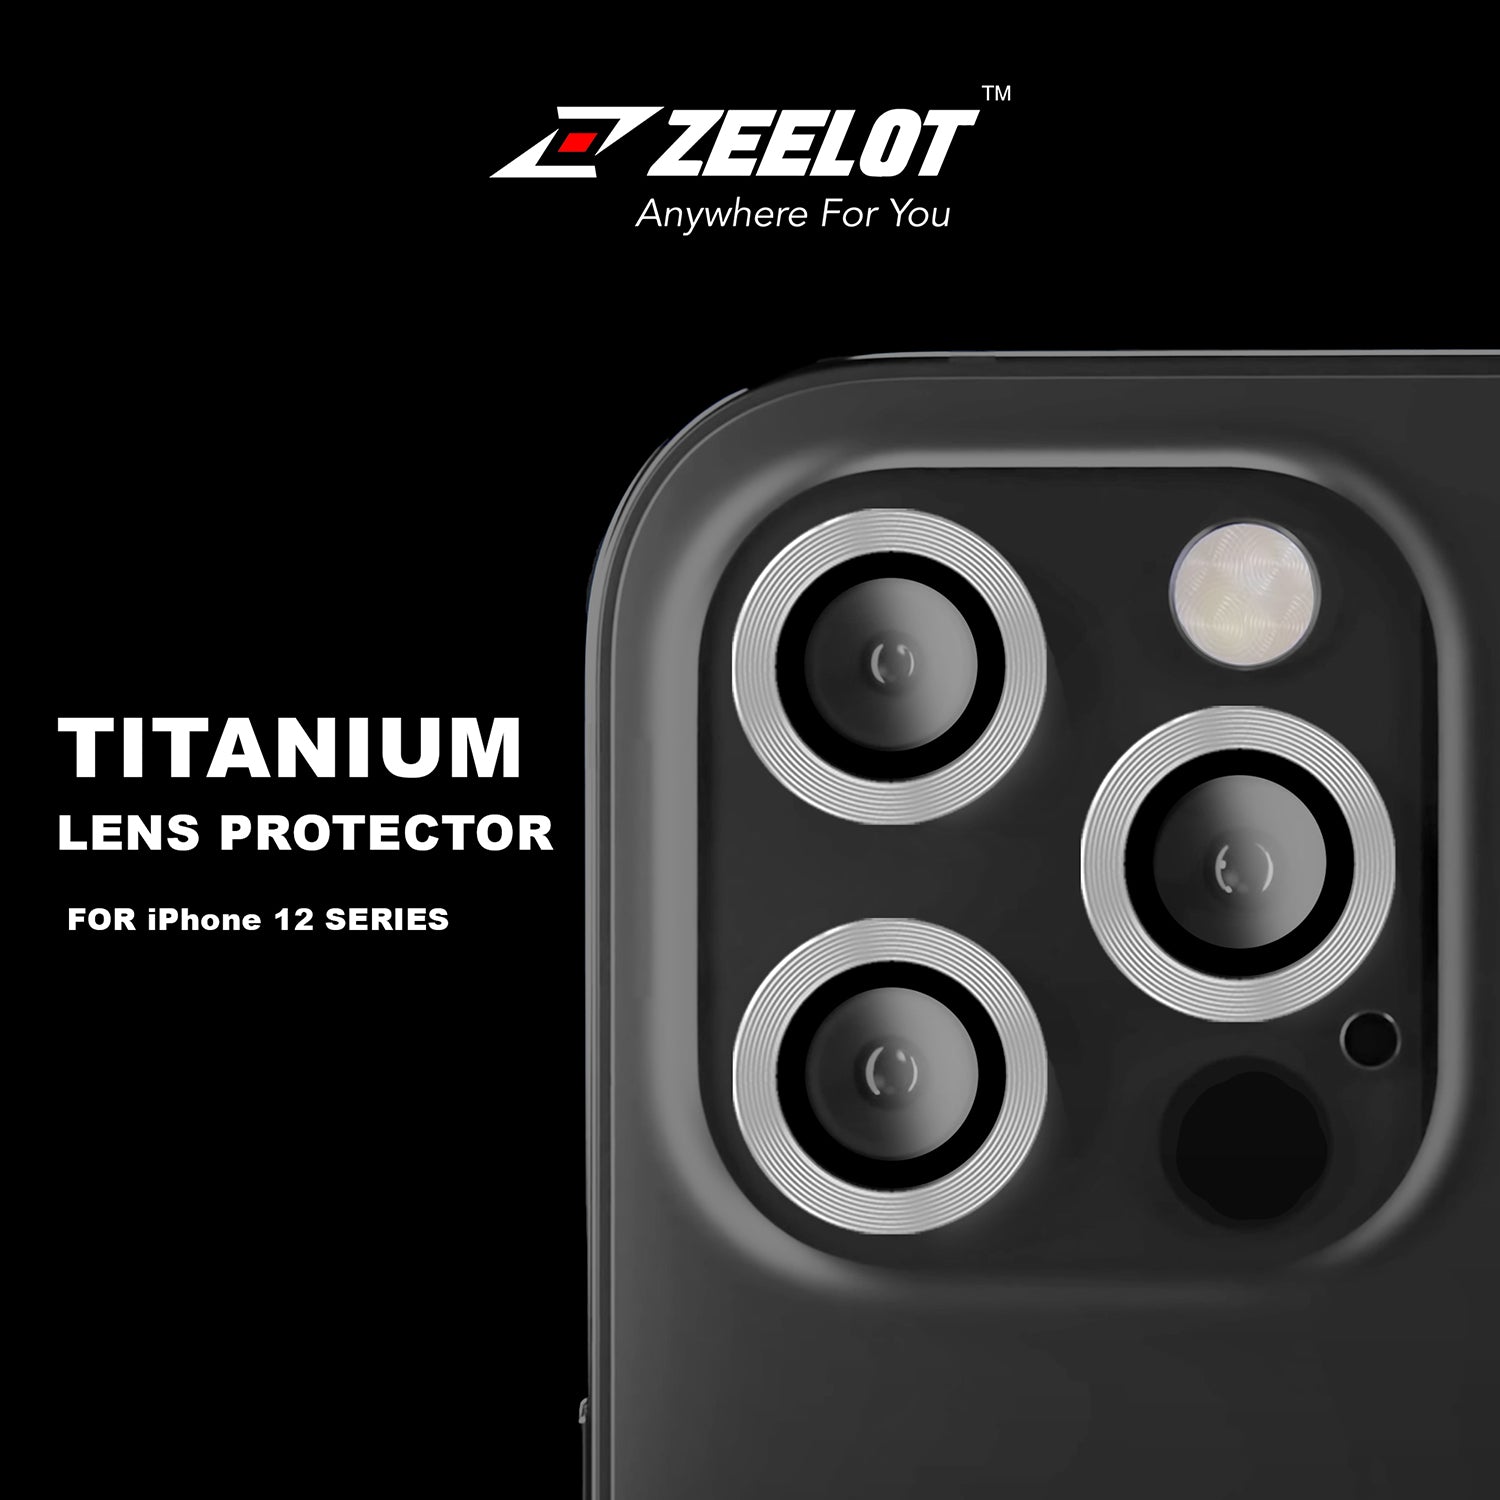 ZEELOT Titanium Steel Lens Protector for iPhone 12 Pro 6.1" (Three Cameras), Silver Default ZEELOT 